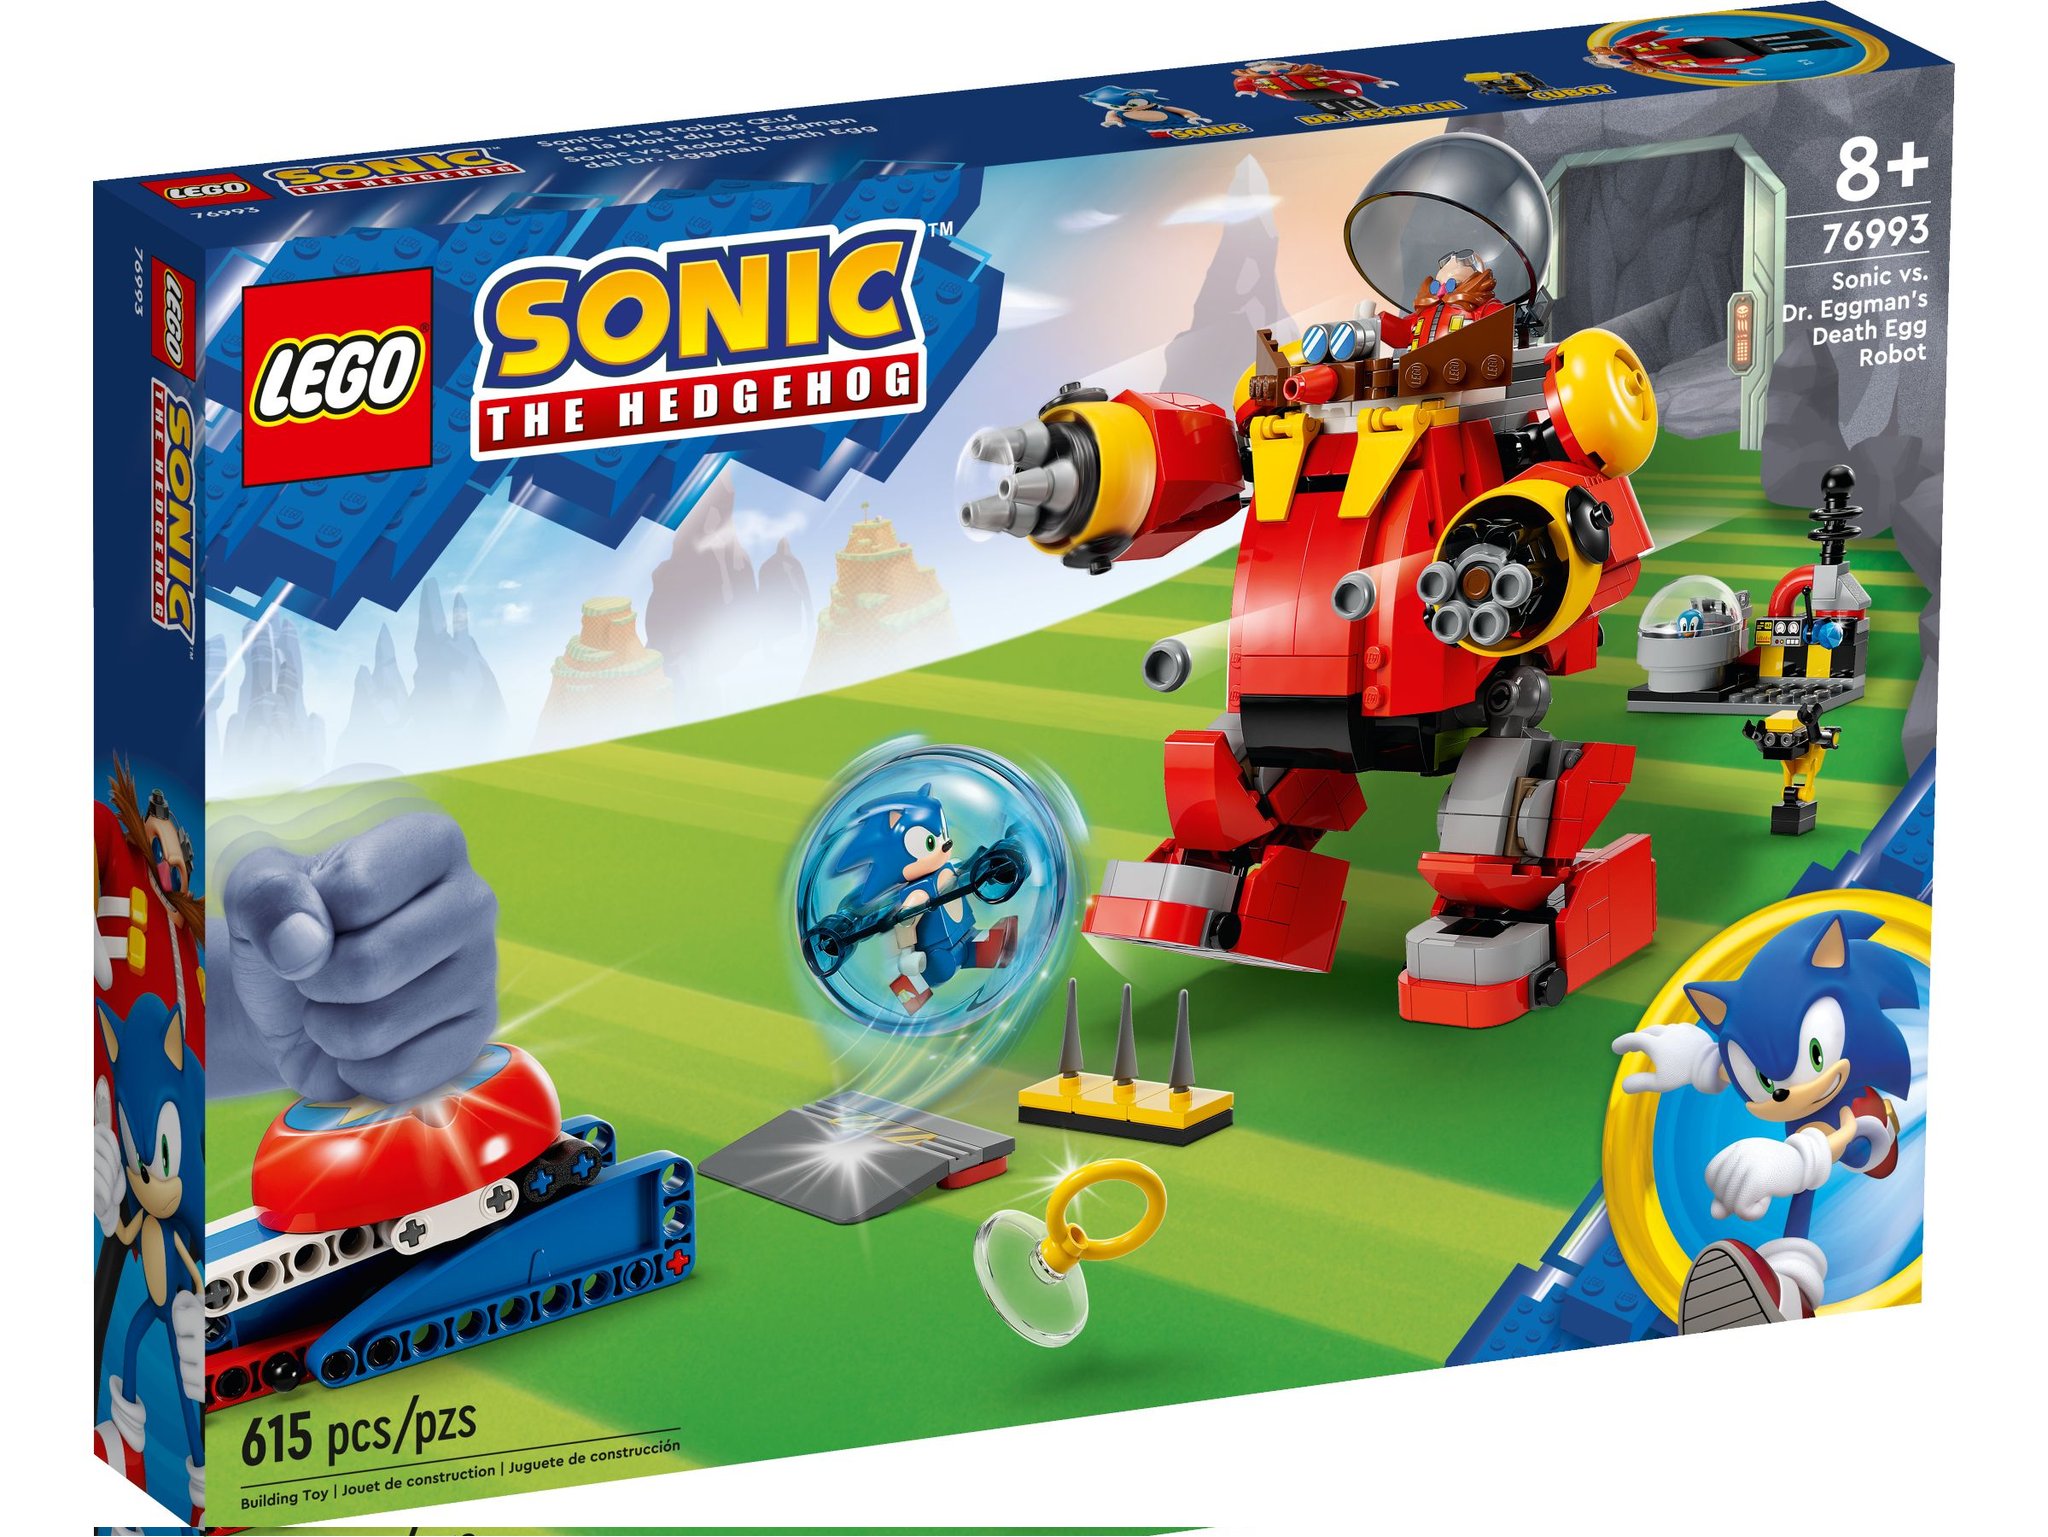 Sonic Lego Sets Revealed